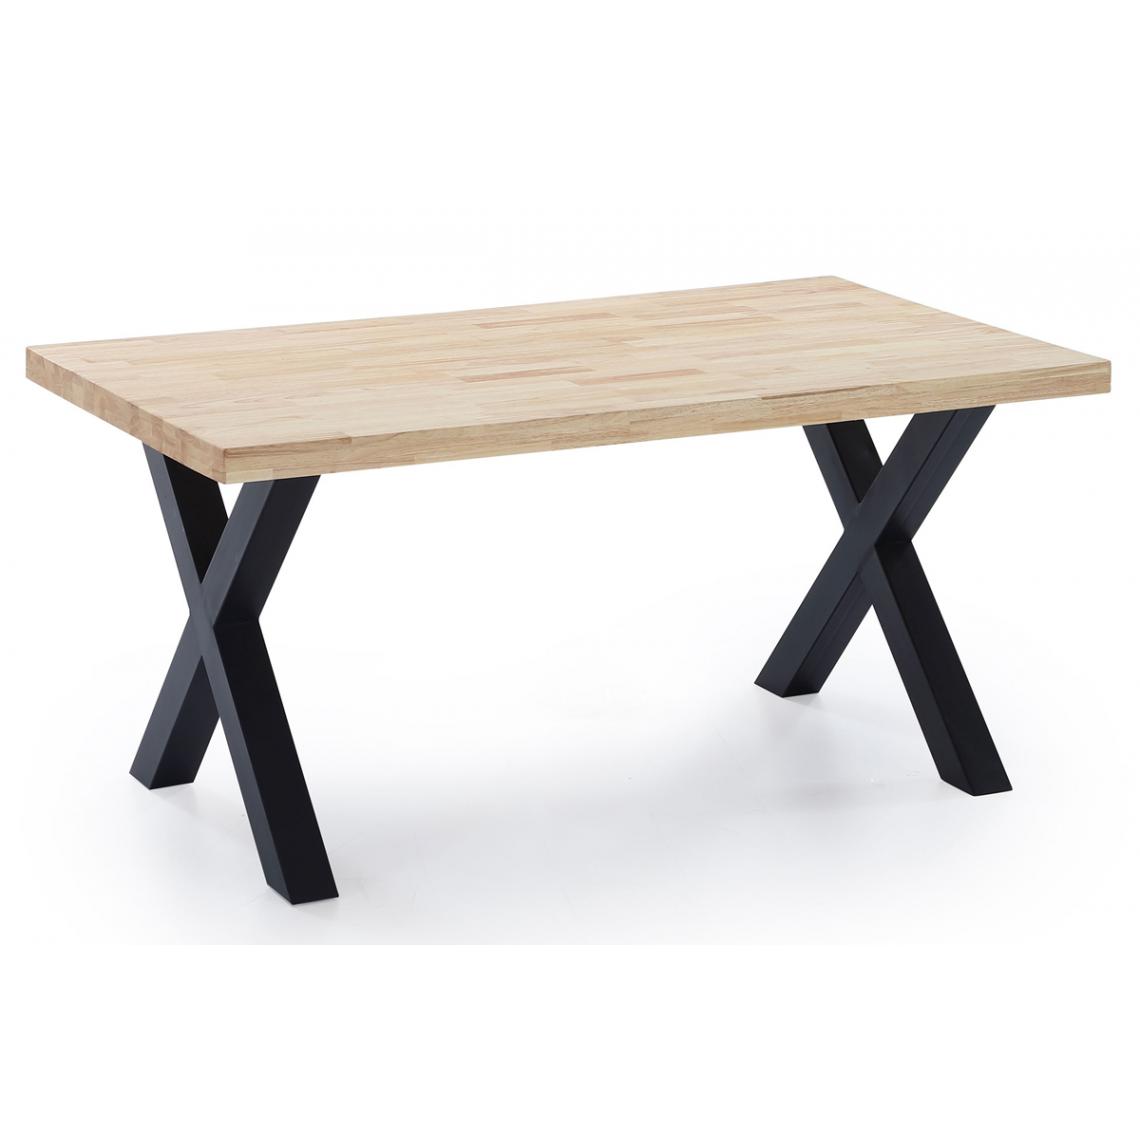 Pegane - Table à manger en bois coloris chêne / pieds noir - Longueur 160 x profondeur 90 x hauteur 76 cm - Tables à manger